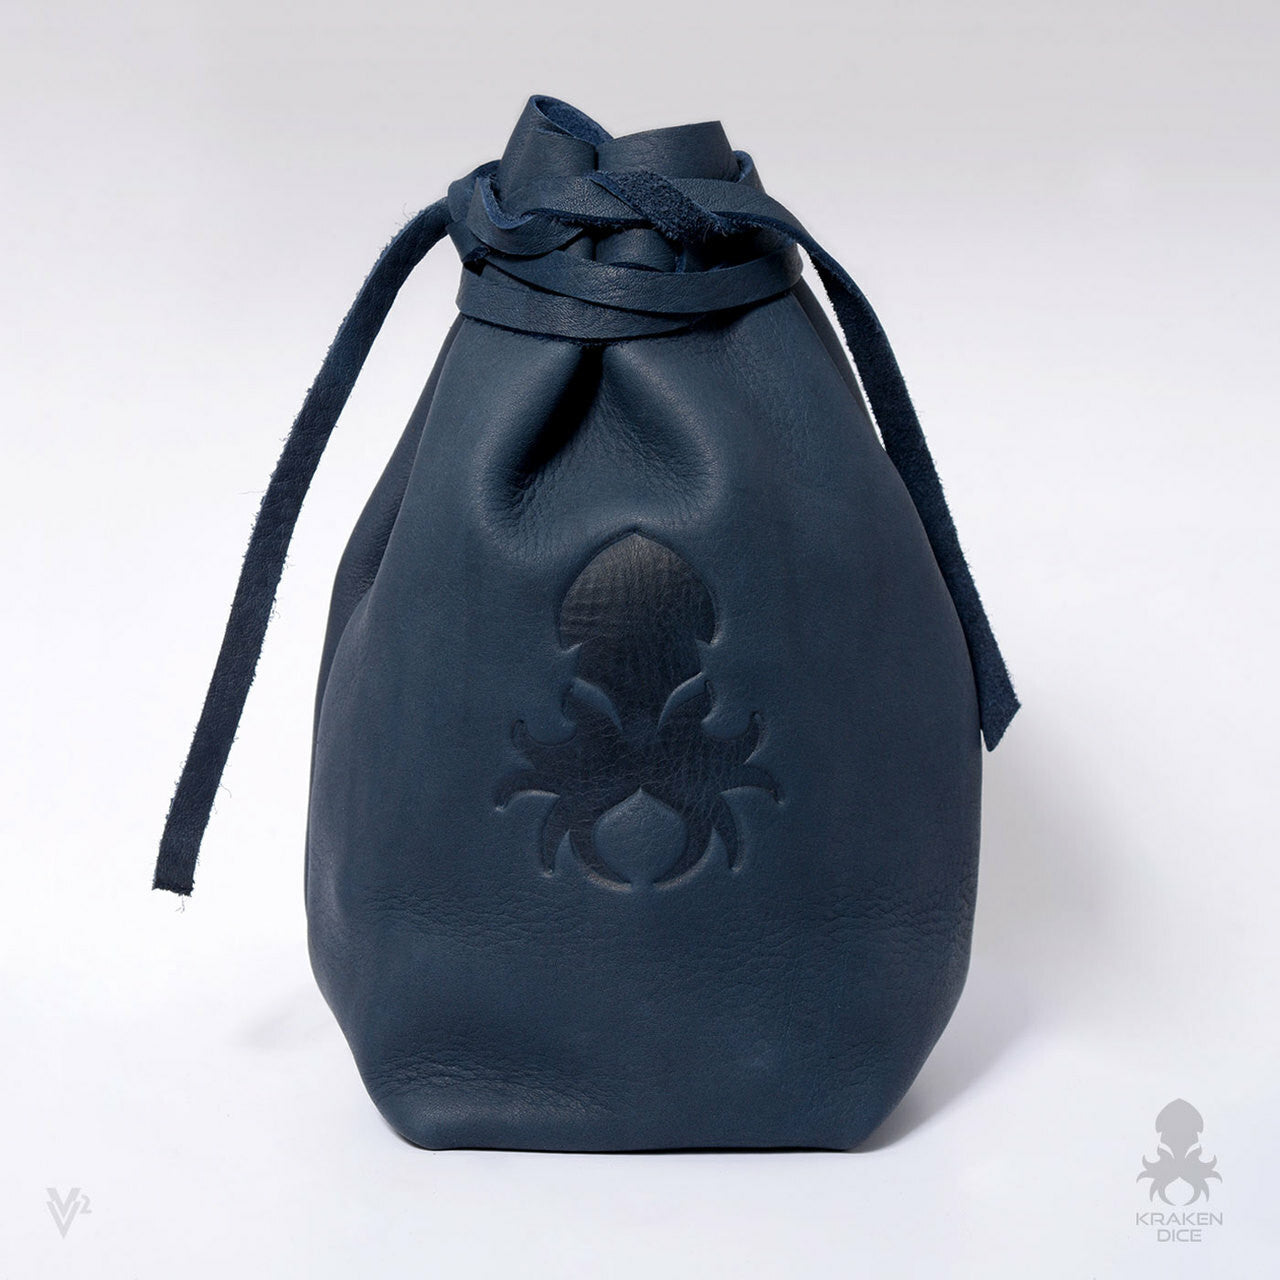 Medium Dice Bag In Blue Leather